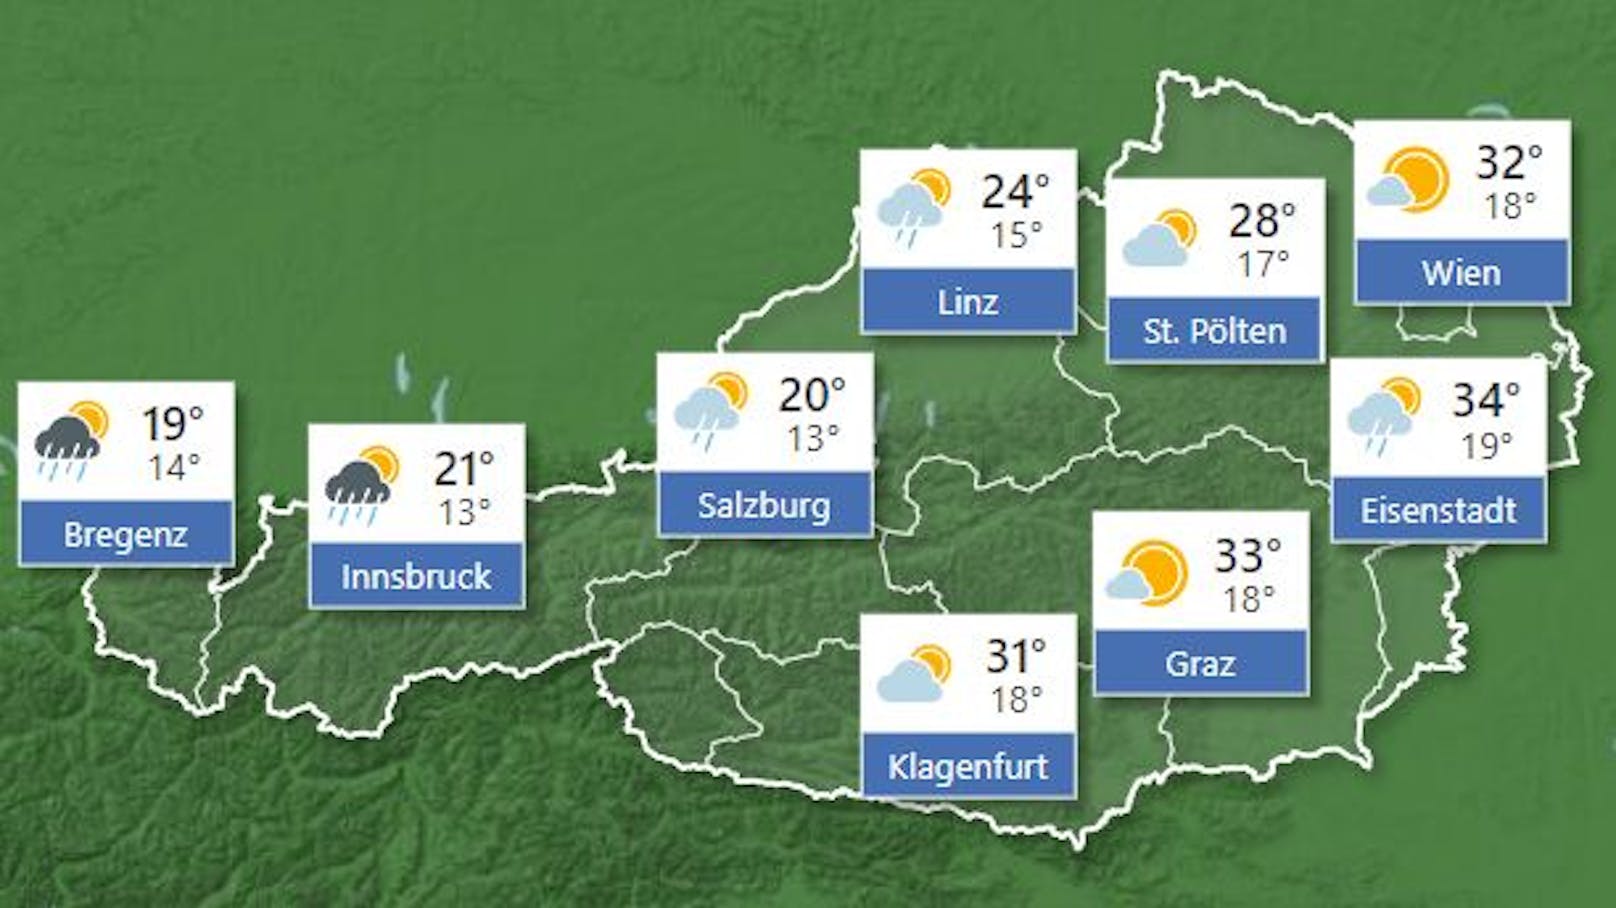 <strong>Wetterprognose für Freitag, 1. Juli 2022:</strong>&nbsp;Der Freitag verläuft von Vorarlberg bis Oberösterreich bewölkt und zeitweise nass, auch im östlichen Bergland breiten sich von Westen her Schauer und lokal heftige Gewitter bis ins Mittelburgenland aus. Dagegen scheint im östlichen Flachland und im Südosten häufig die Sonne. Nördlich der Alpen frischt kräftiger, gegen Abend am Alpenostrand stürmischer Westwind auf. Große Temperaturkontraste: Von Bregenz bis Kitzbühel 16 bis 20, von Innsbruck bis Linz 21 bis 29 und von Klagenfurt bis Wien 30 bis 36 Grad. 